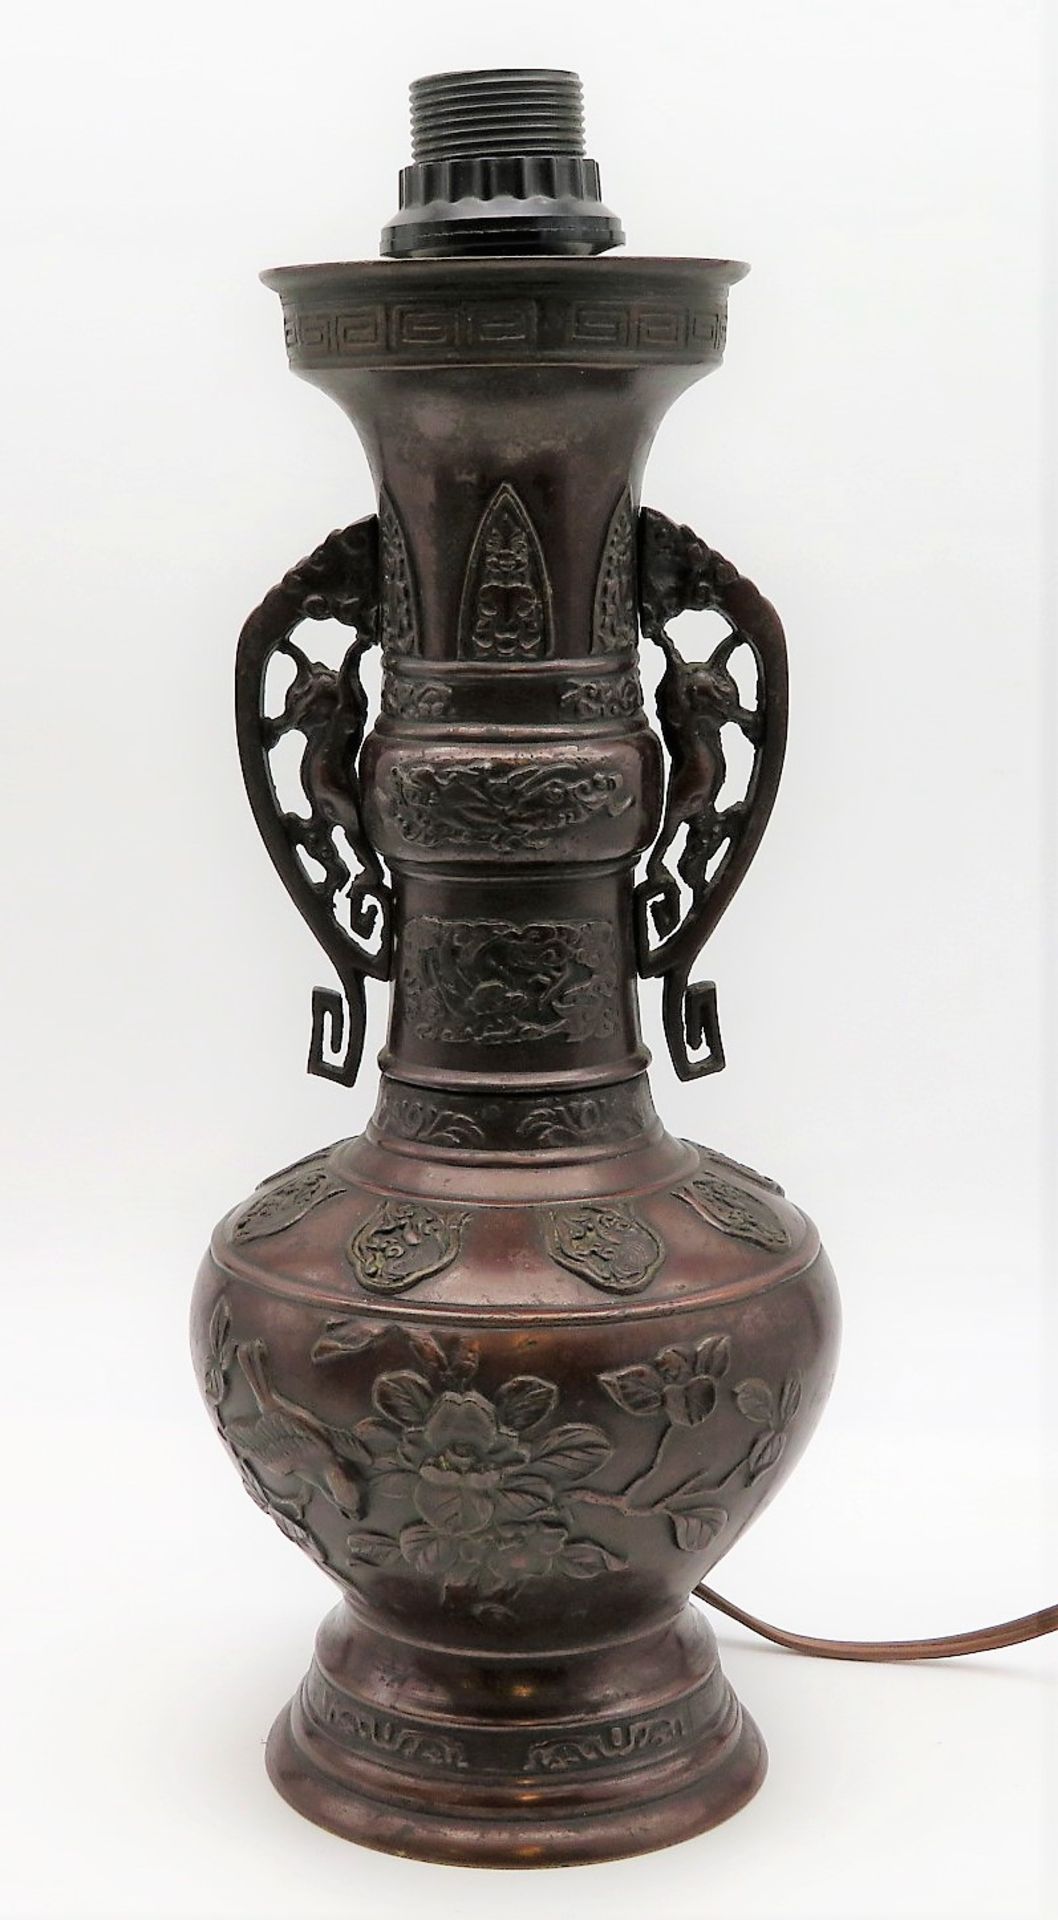 Vase mit 2 seitlichen Handhaben, Japan, Meiji Periode, 1868 - 1912, Bronze mit reichem Reliefdekor,